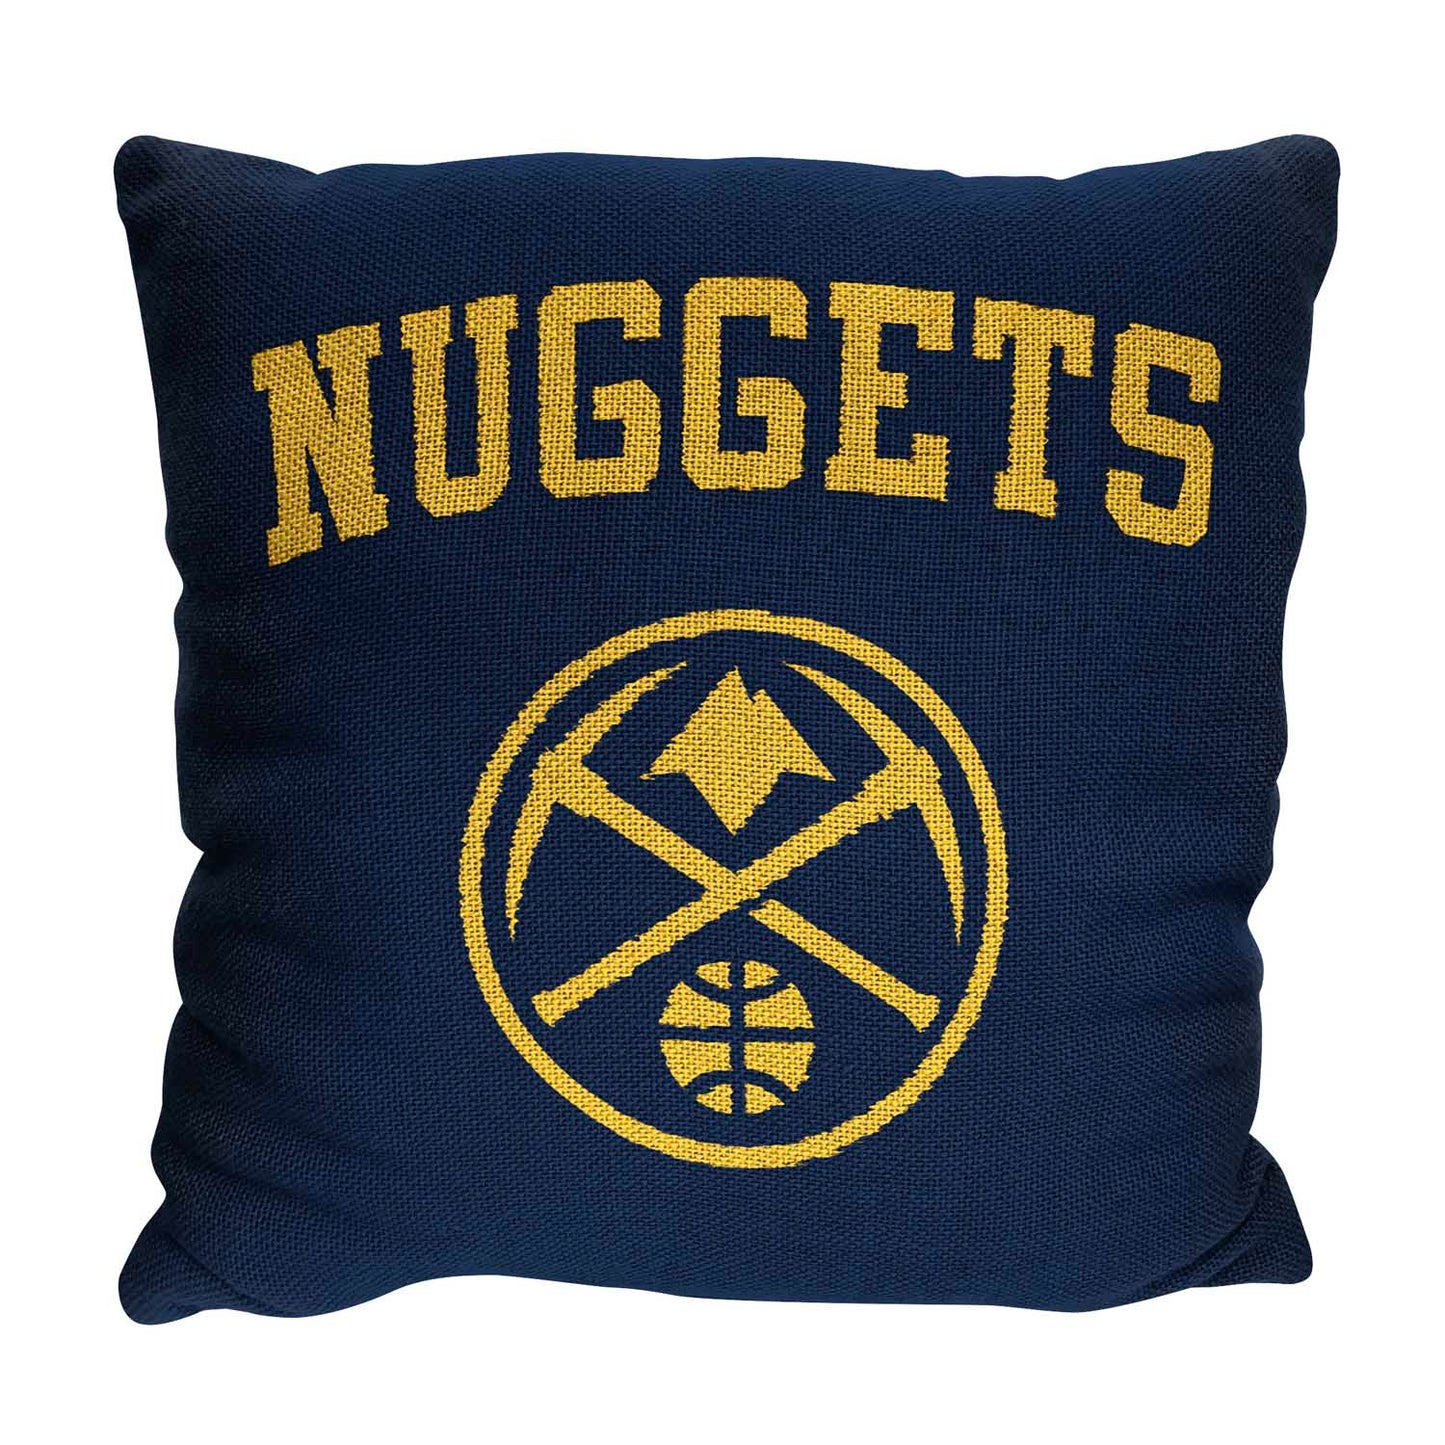 Denver Nuggets NBA Decorative Basketball Throw Pillow - Navy